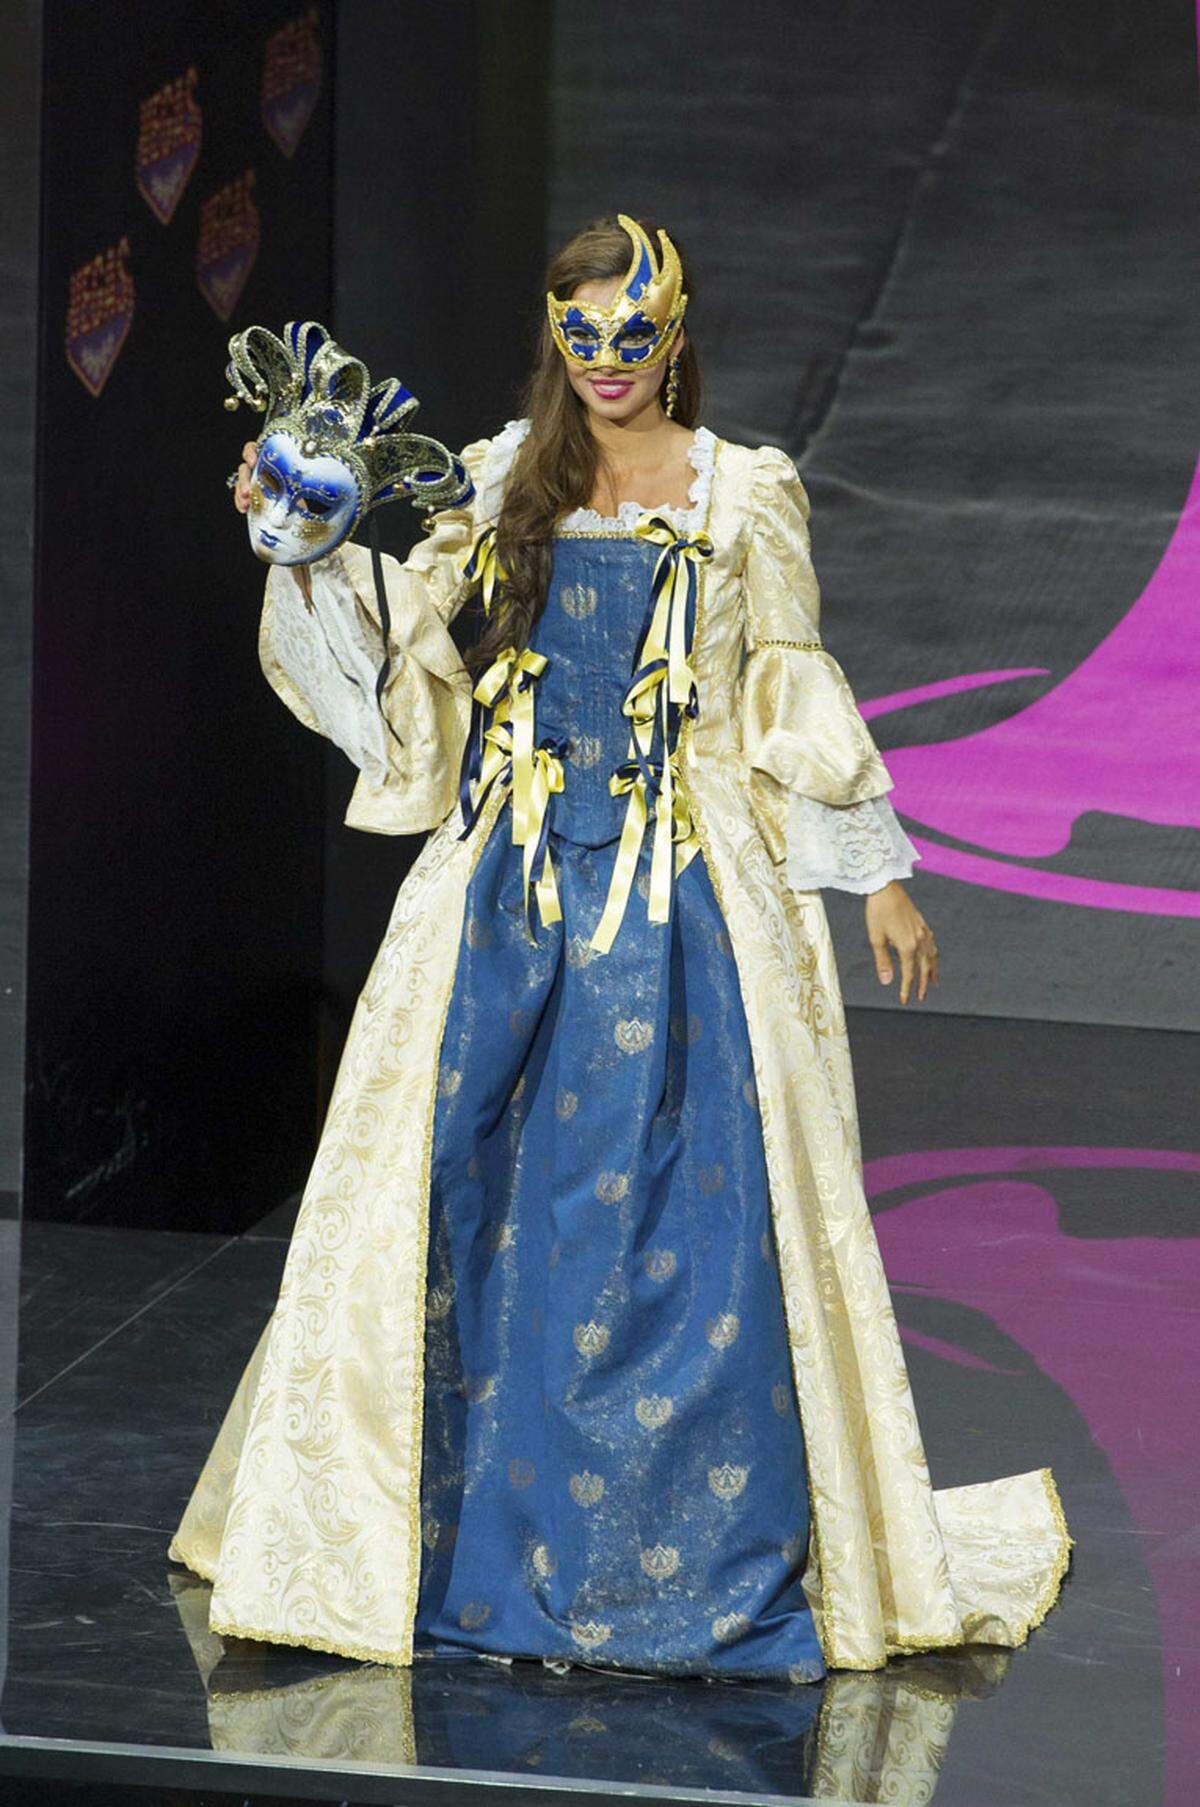 Eine venezianische Maske war für Luna Voce, Miss Italy 2013, ein Muss.